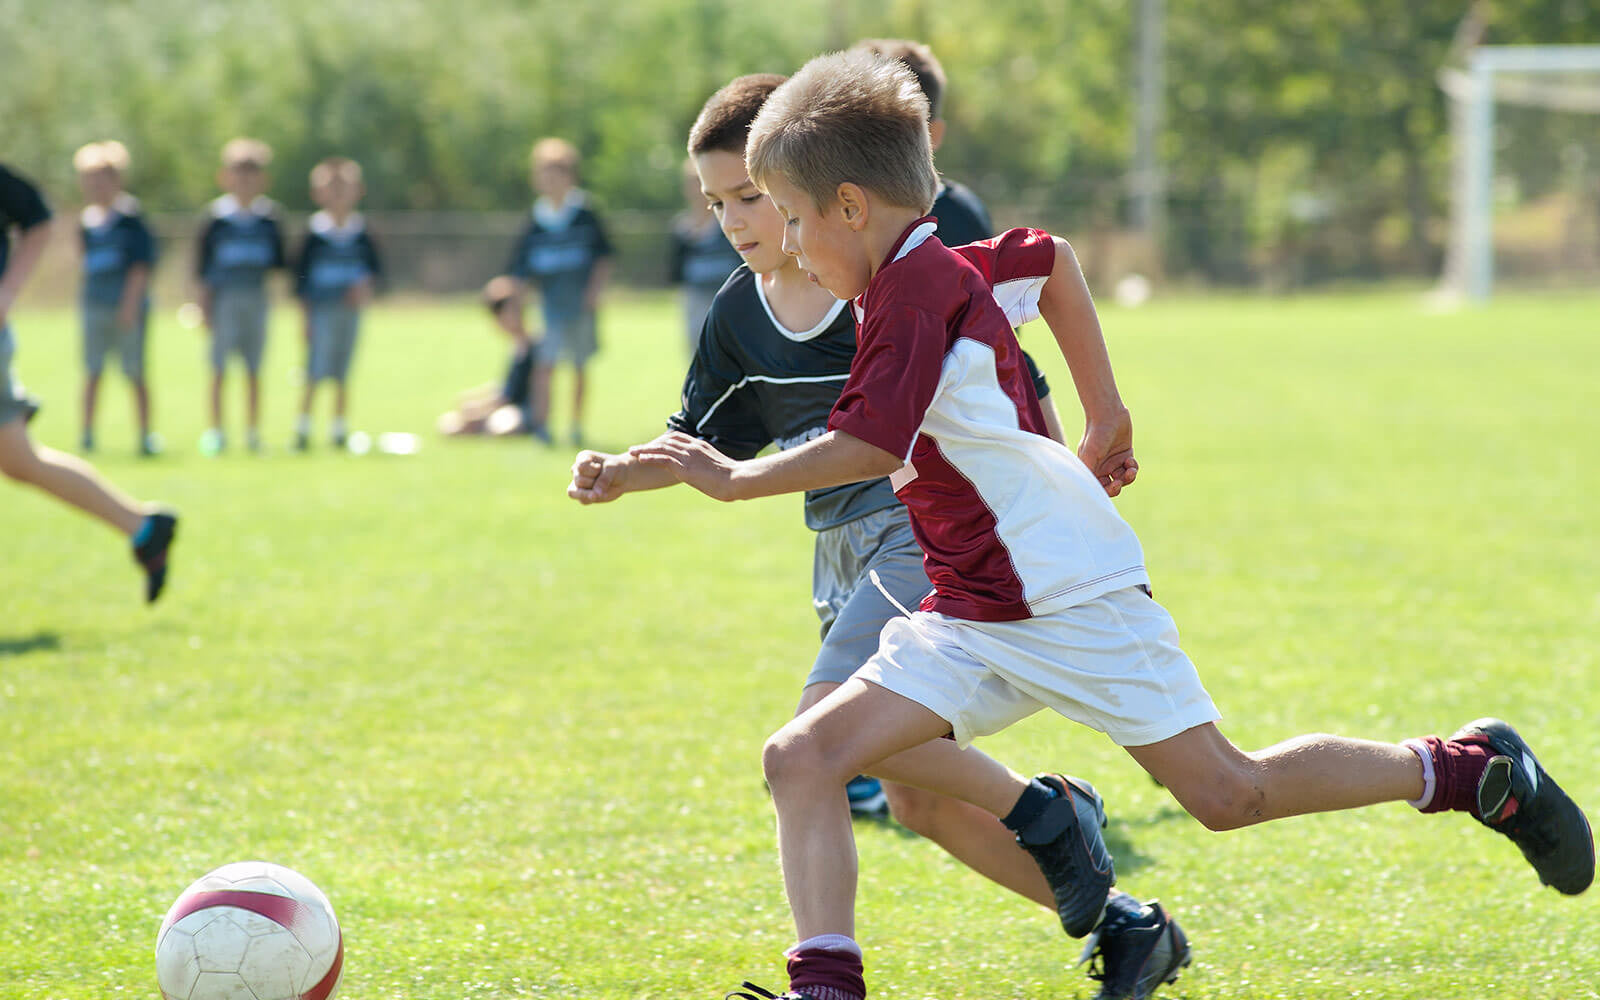 Обучение игре футбол. Детская тренировка по футболу. Футбол дети. Дети играют в футбол. Игра футбол.